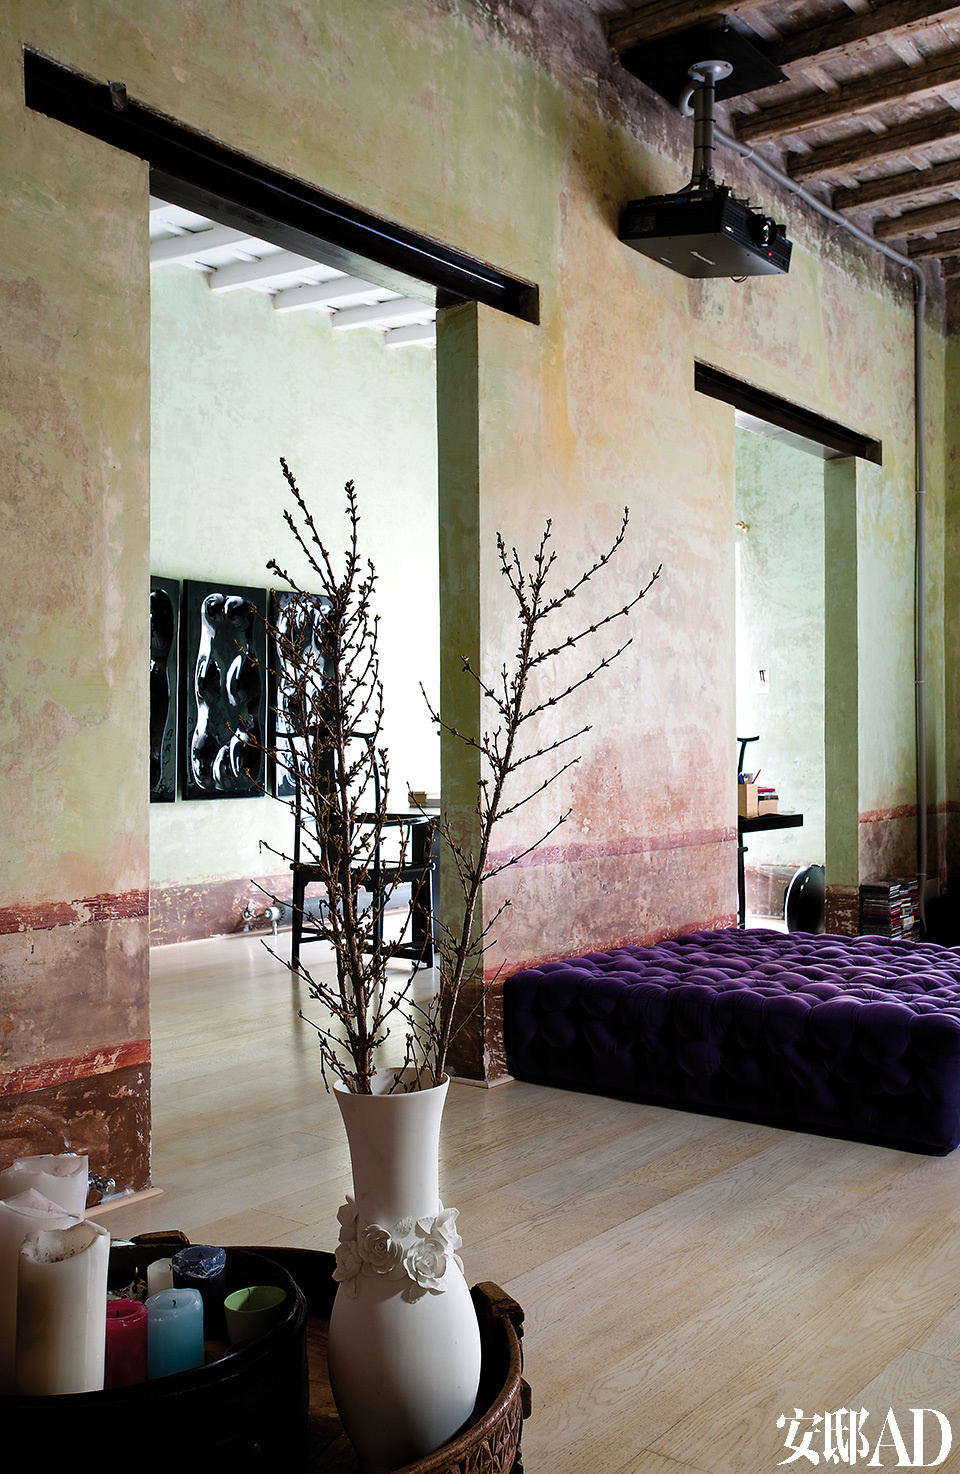 从起居室能看到书房一景。La Michetta紫色绒面沙发由Gaetano Pesce为Meritalia设计。复古木桌上摆放着蜡烛和白色陶花瓶，里面的植物营造出了中国蜡梅的效果。